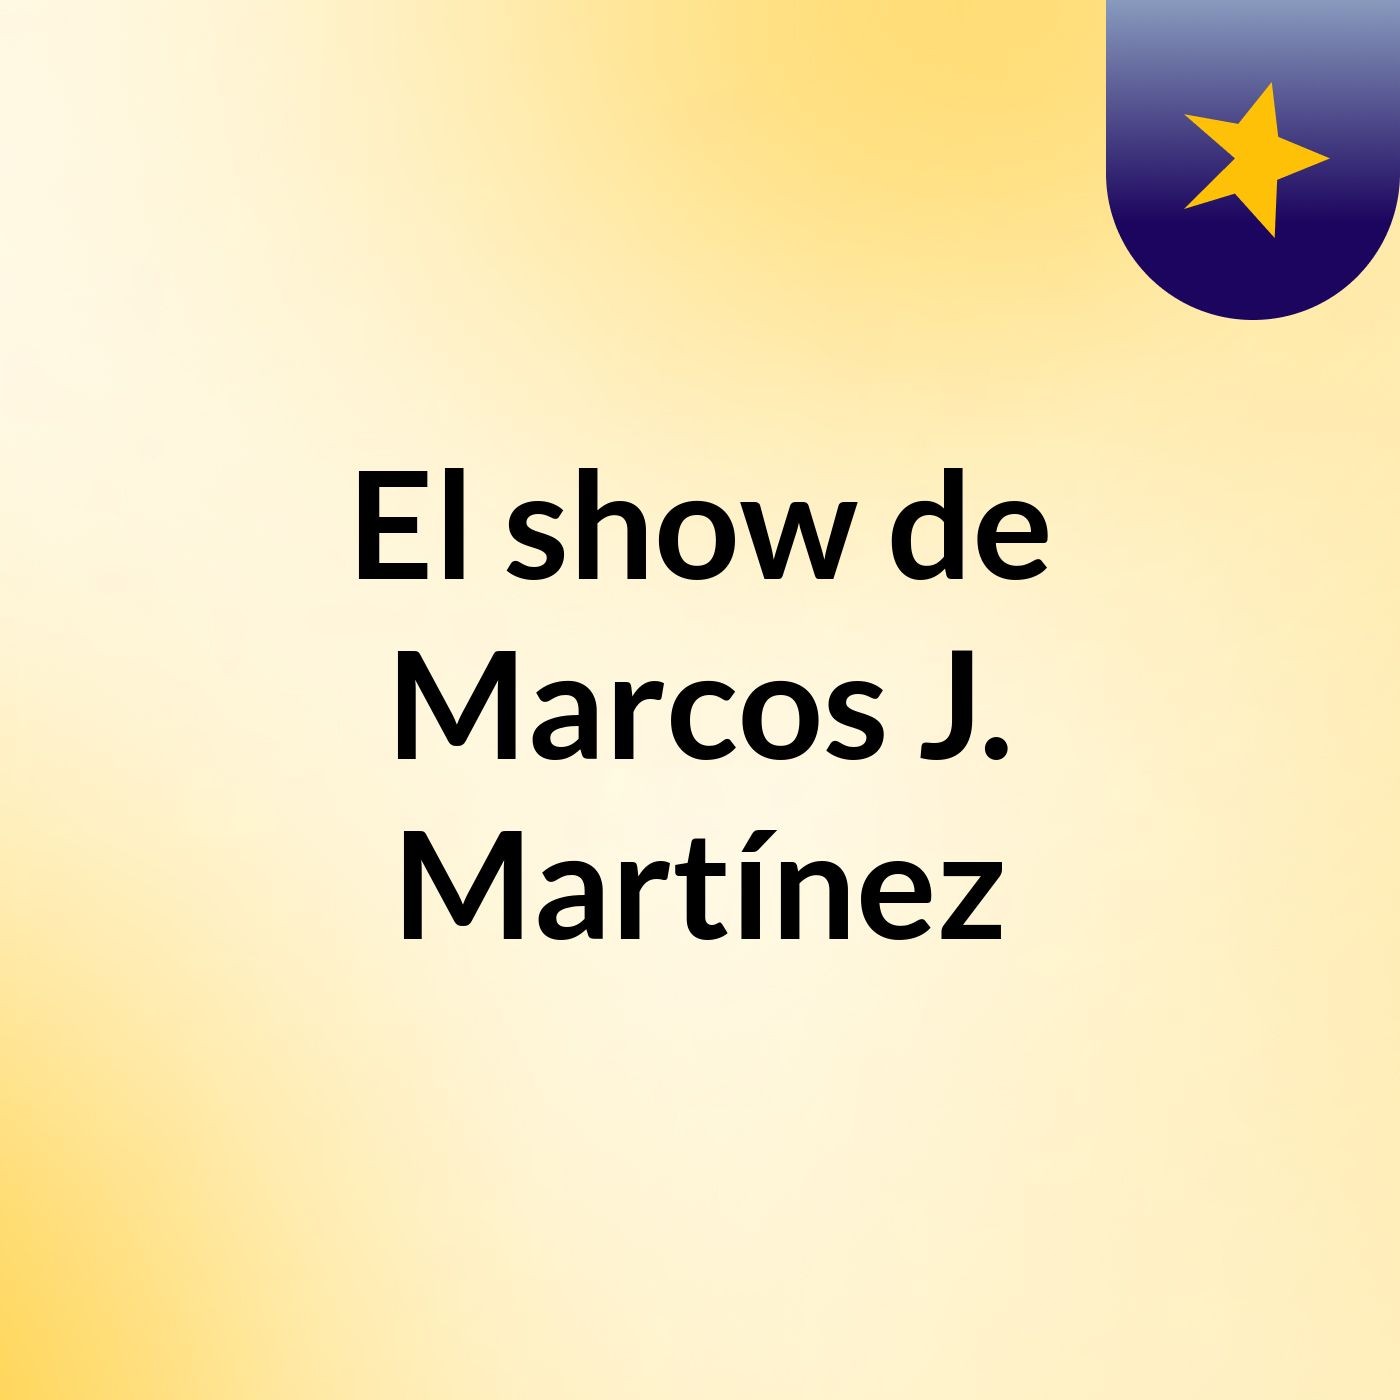 El show de Marcos J. Martínez